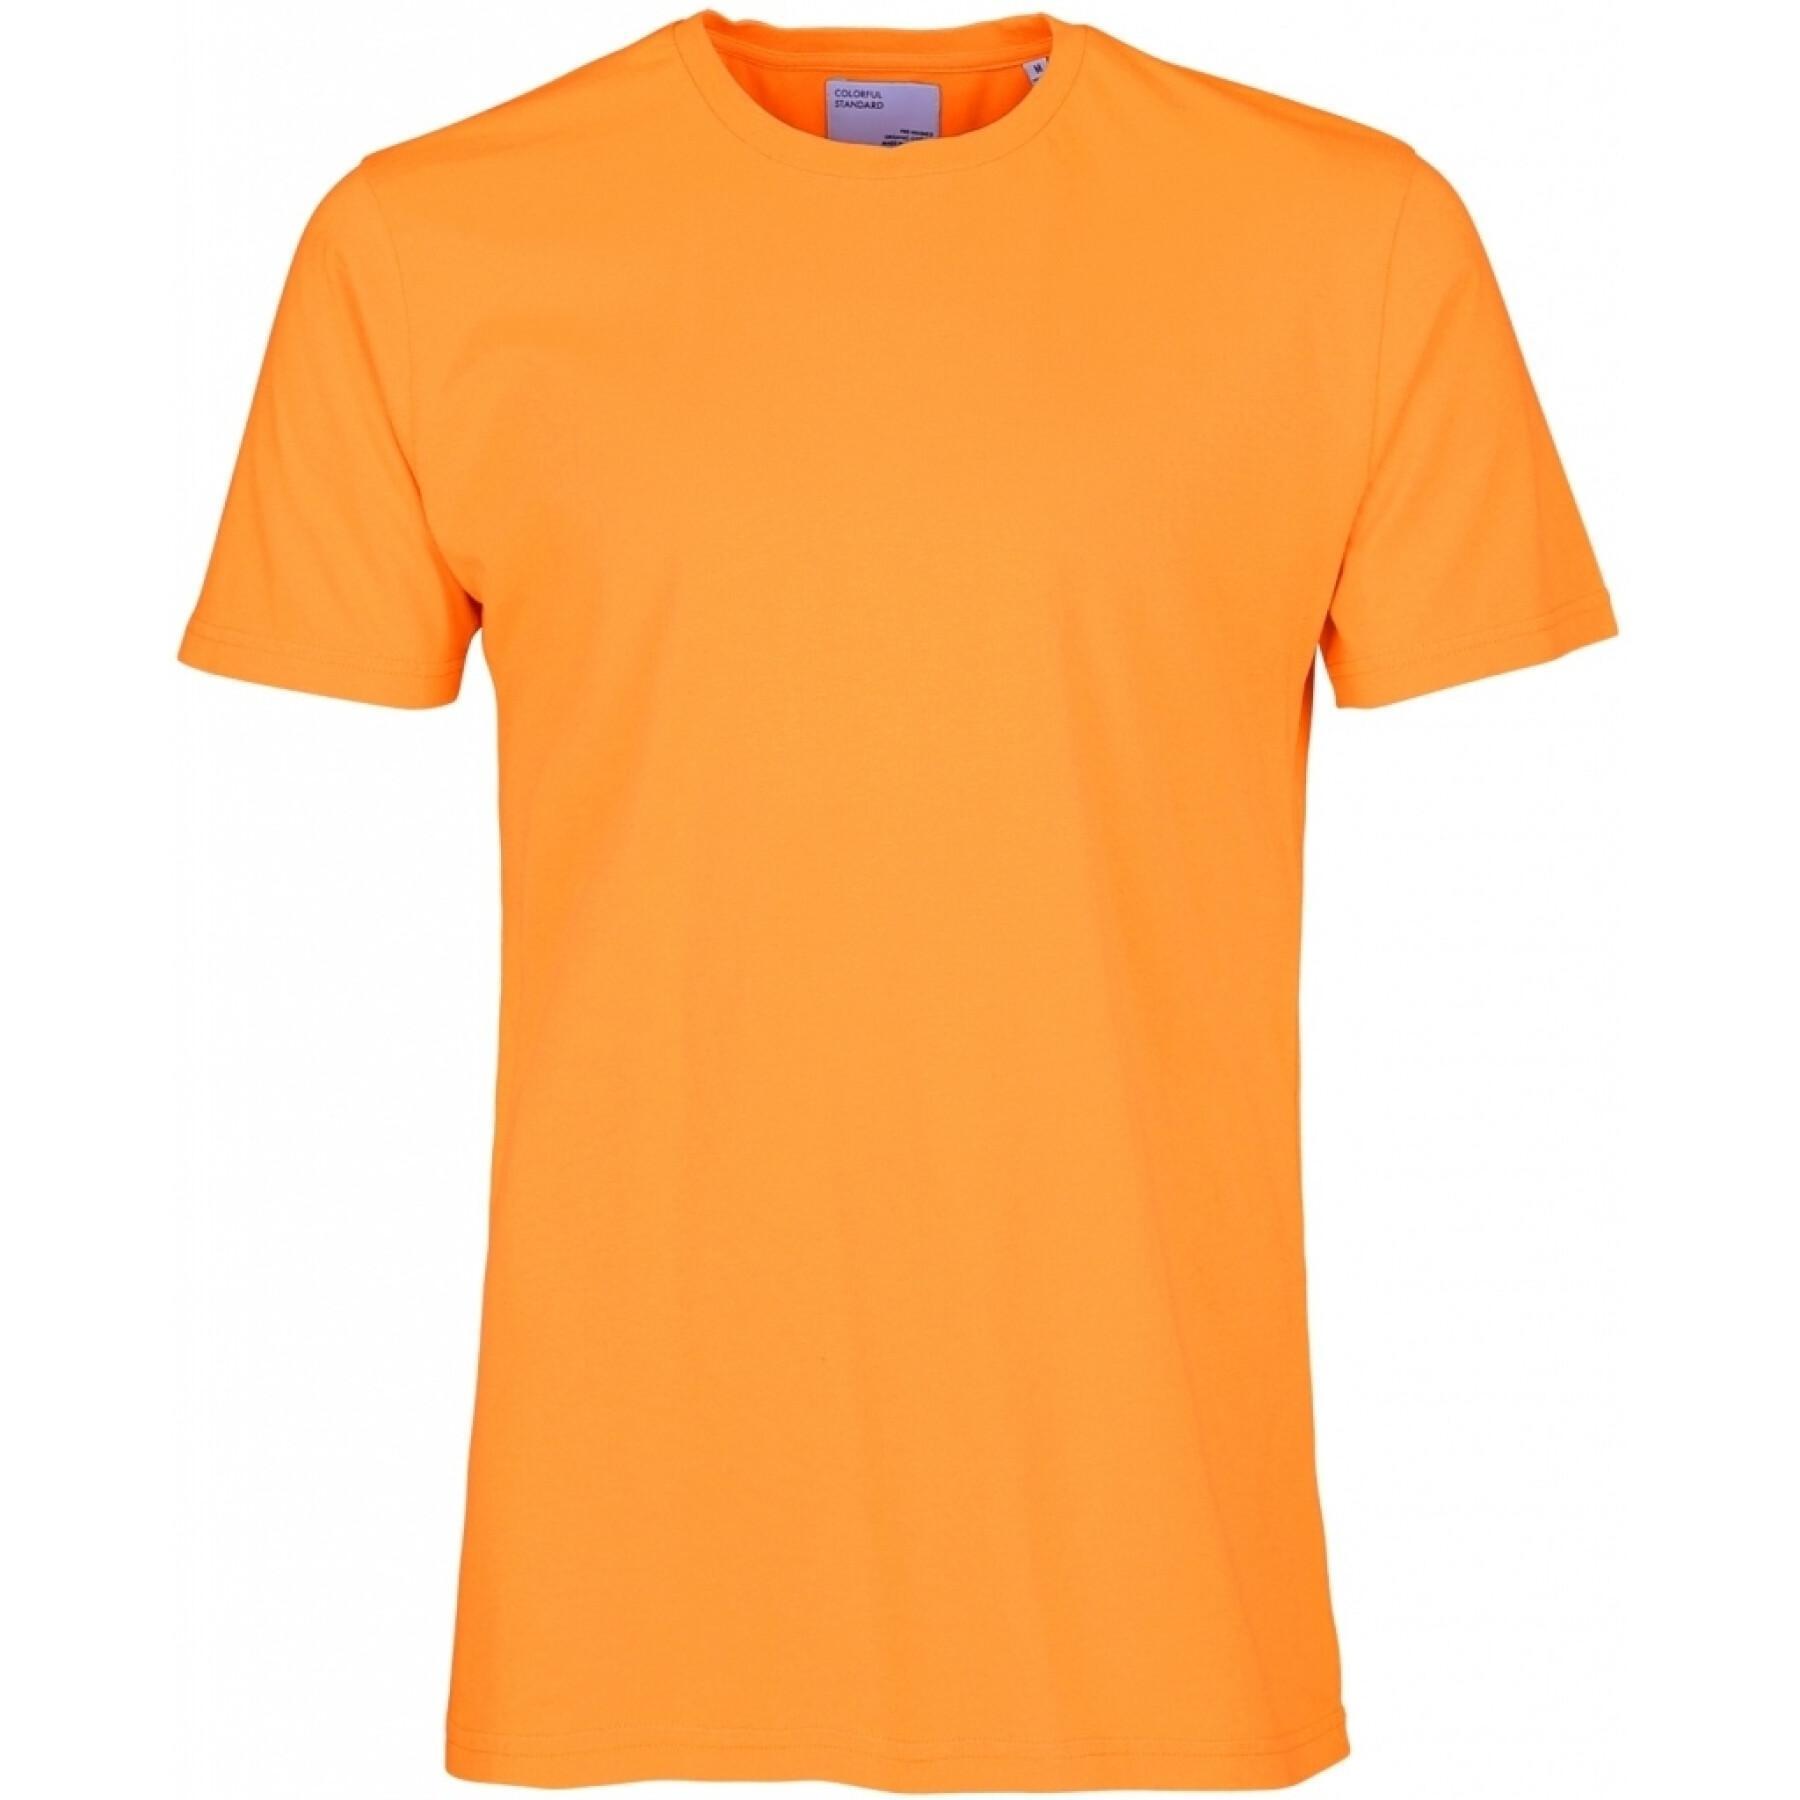 Maglietta Colorful Standard Classic Organic sunny orange